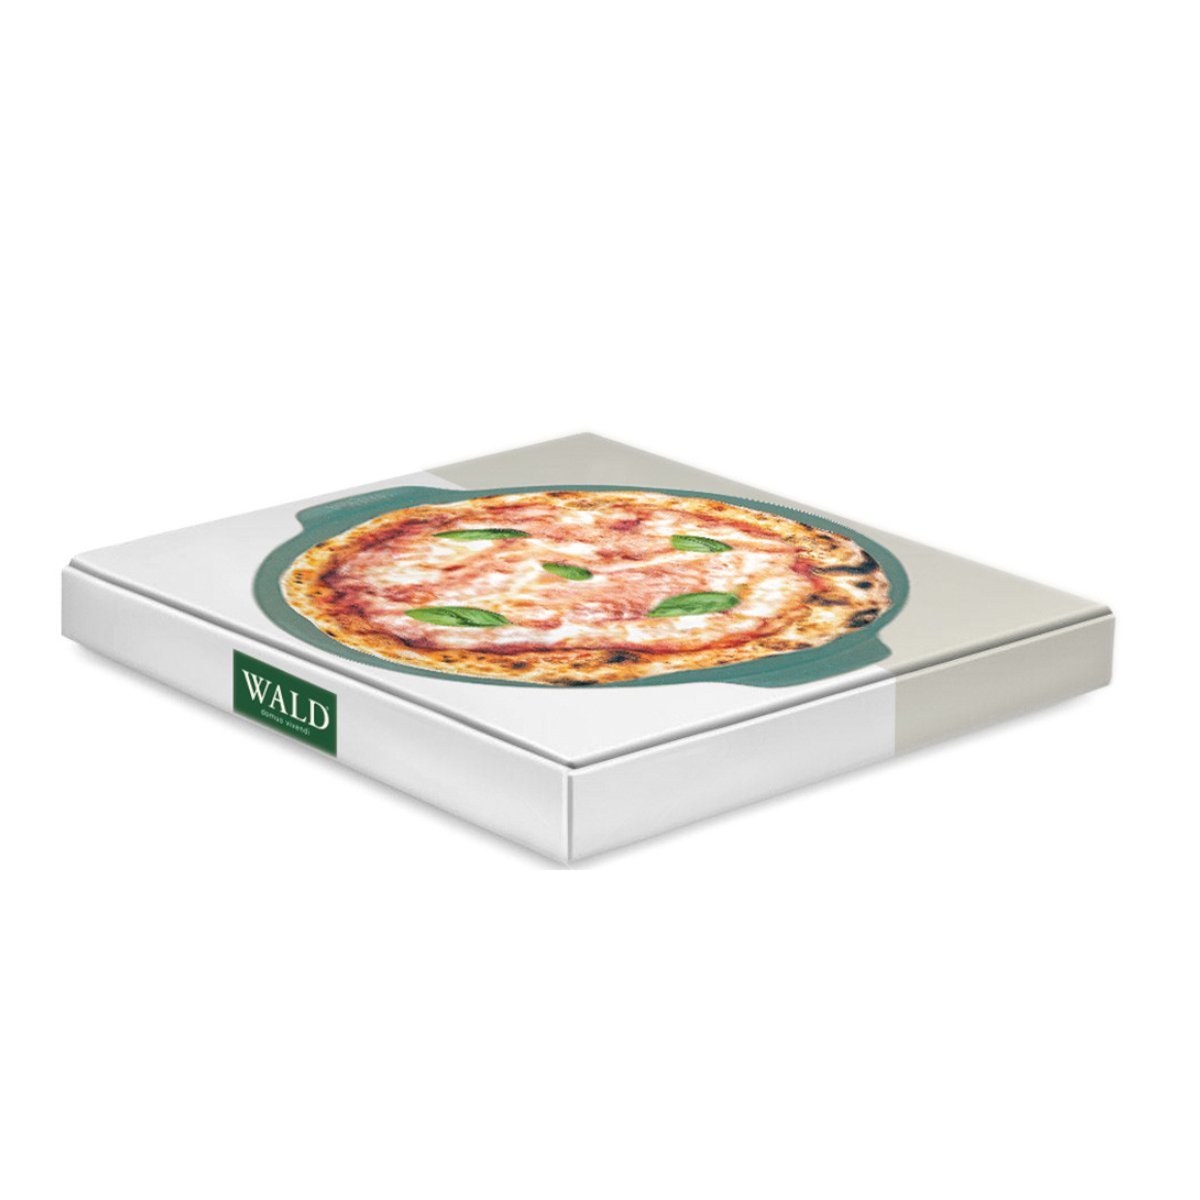 WALD Pizzastein Ton, durchgebrannt dunkelgrau, glasiert Pizzaplatte 34 anthrazit cm, und